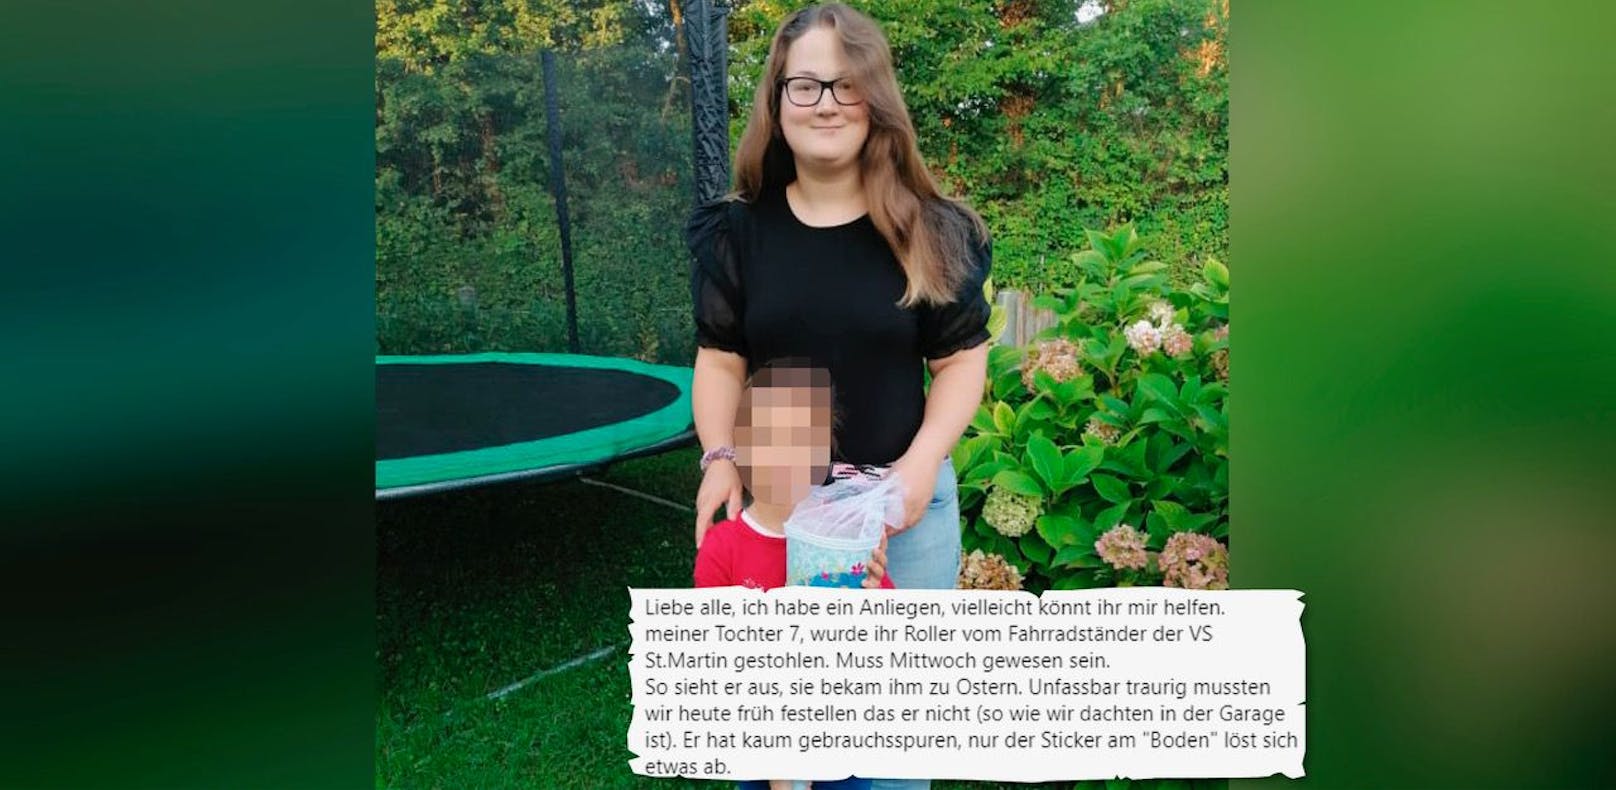 Der siebenjährigen Sofia wurde der Scooter gestohlen. Ihre Mama hofft nun auf Hinweise über Facebook.